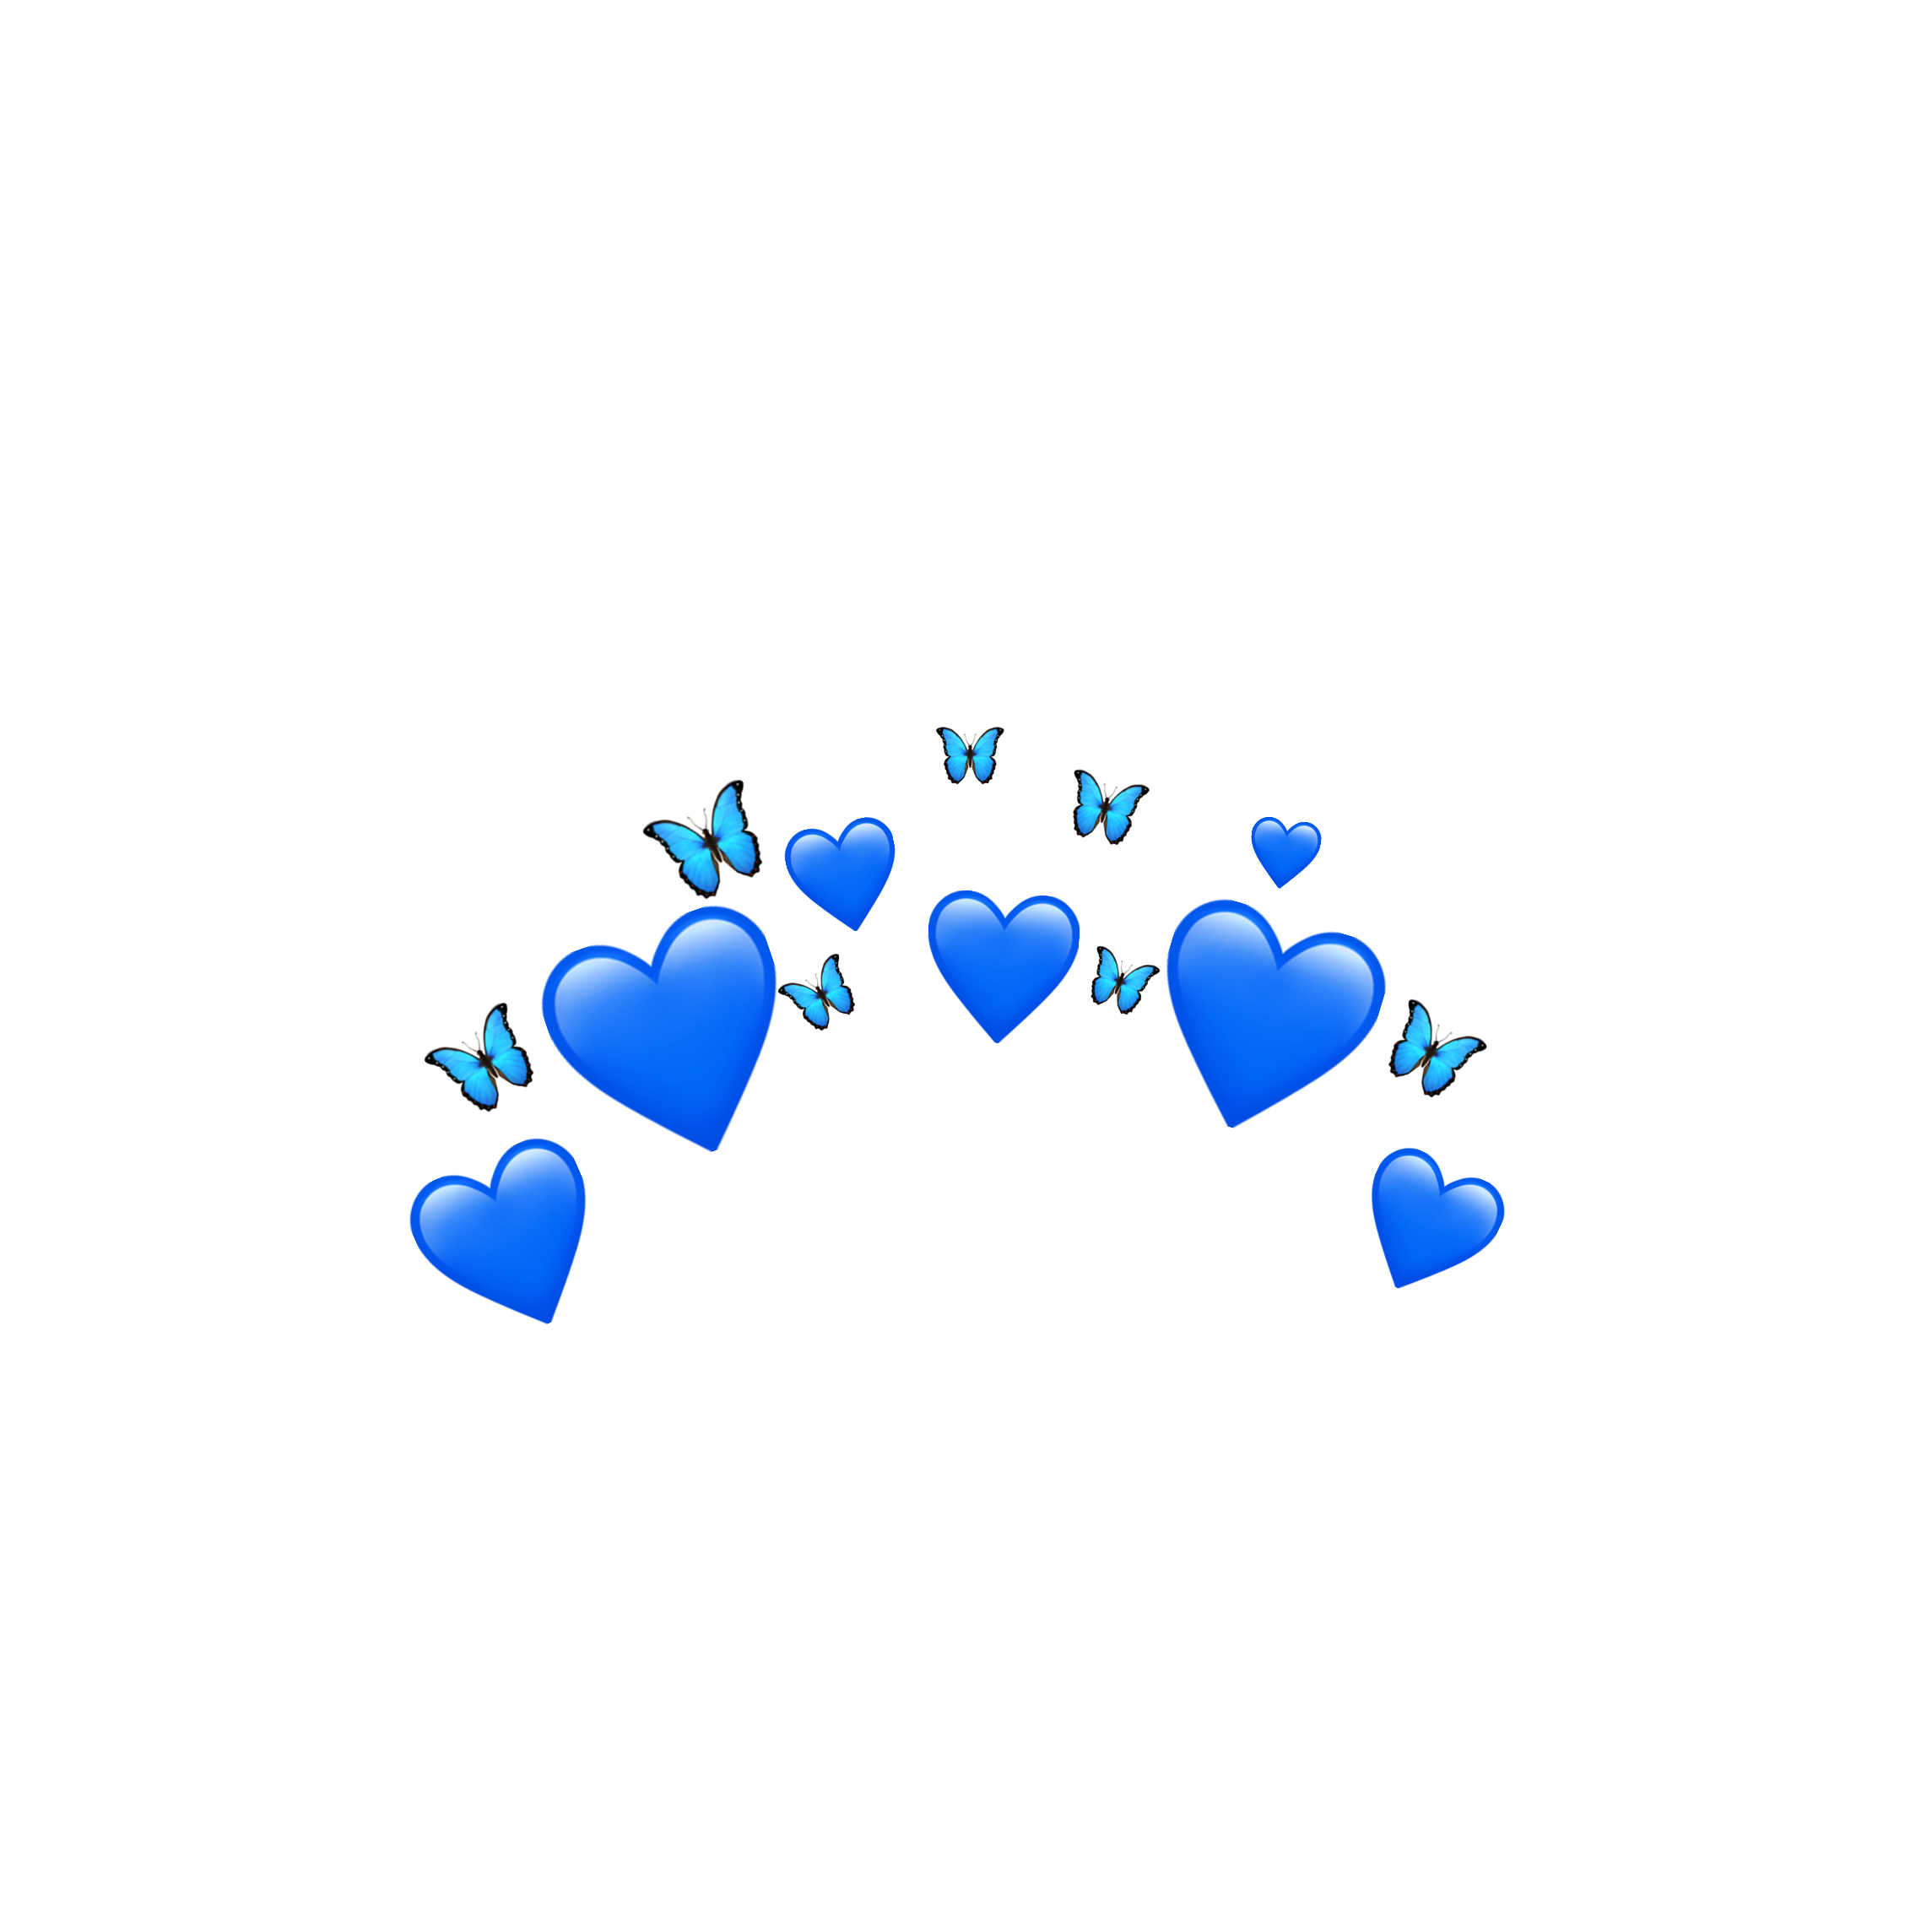 Синий синий над головой. Синие сердечки на прозрачном фоне. Голубые сердечки на прозрачном фоне. Синие сердечки над головой. Голубое сердечко на белом фоне.